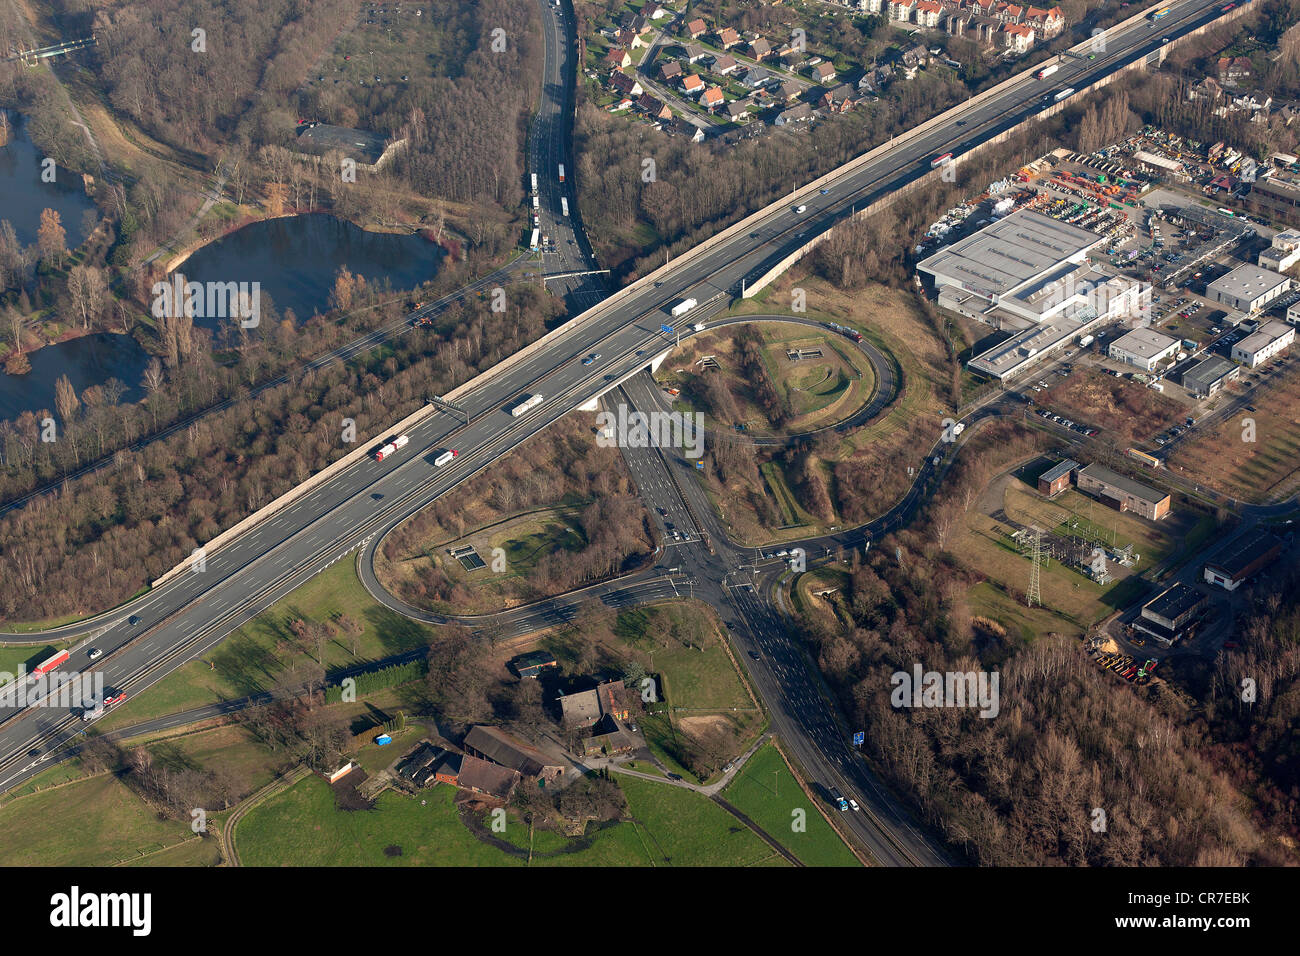 Vista aerea, autostrada federale B224, Gladbeck, corso del B224 road con tunnel previsto, la zona della Ruhr, Germania, Europa Foto Stock